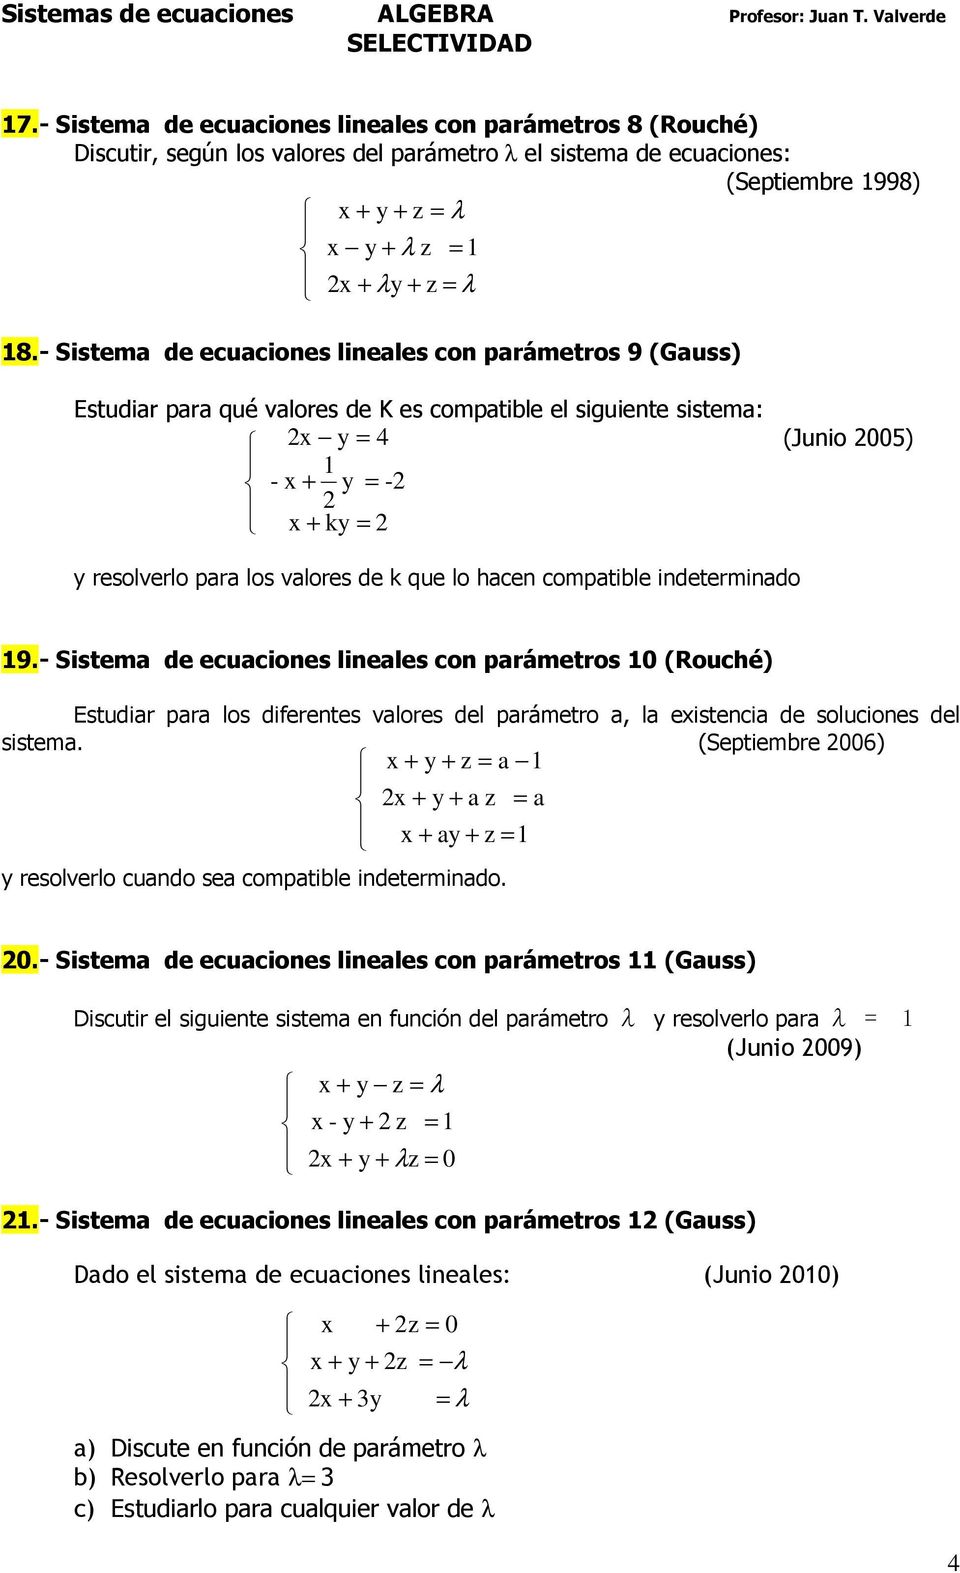 compatible indeterminado 9.- Sistema de ecuaciones lineales con parámetros 0 (Rouché) Estudiar para los diferentes valores del parámetro a, la eistencia de soluciones del sistema.